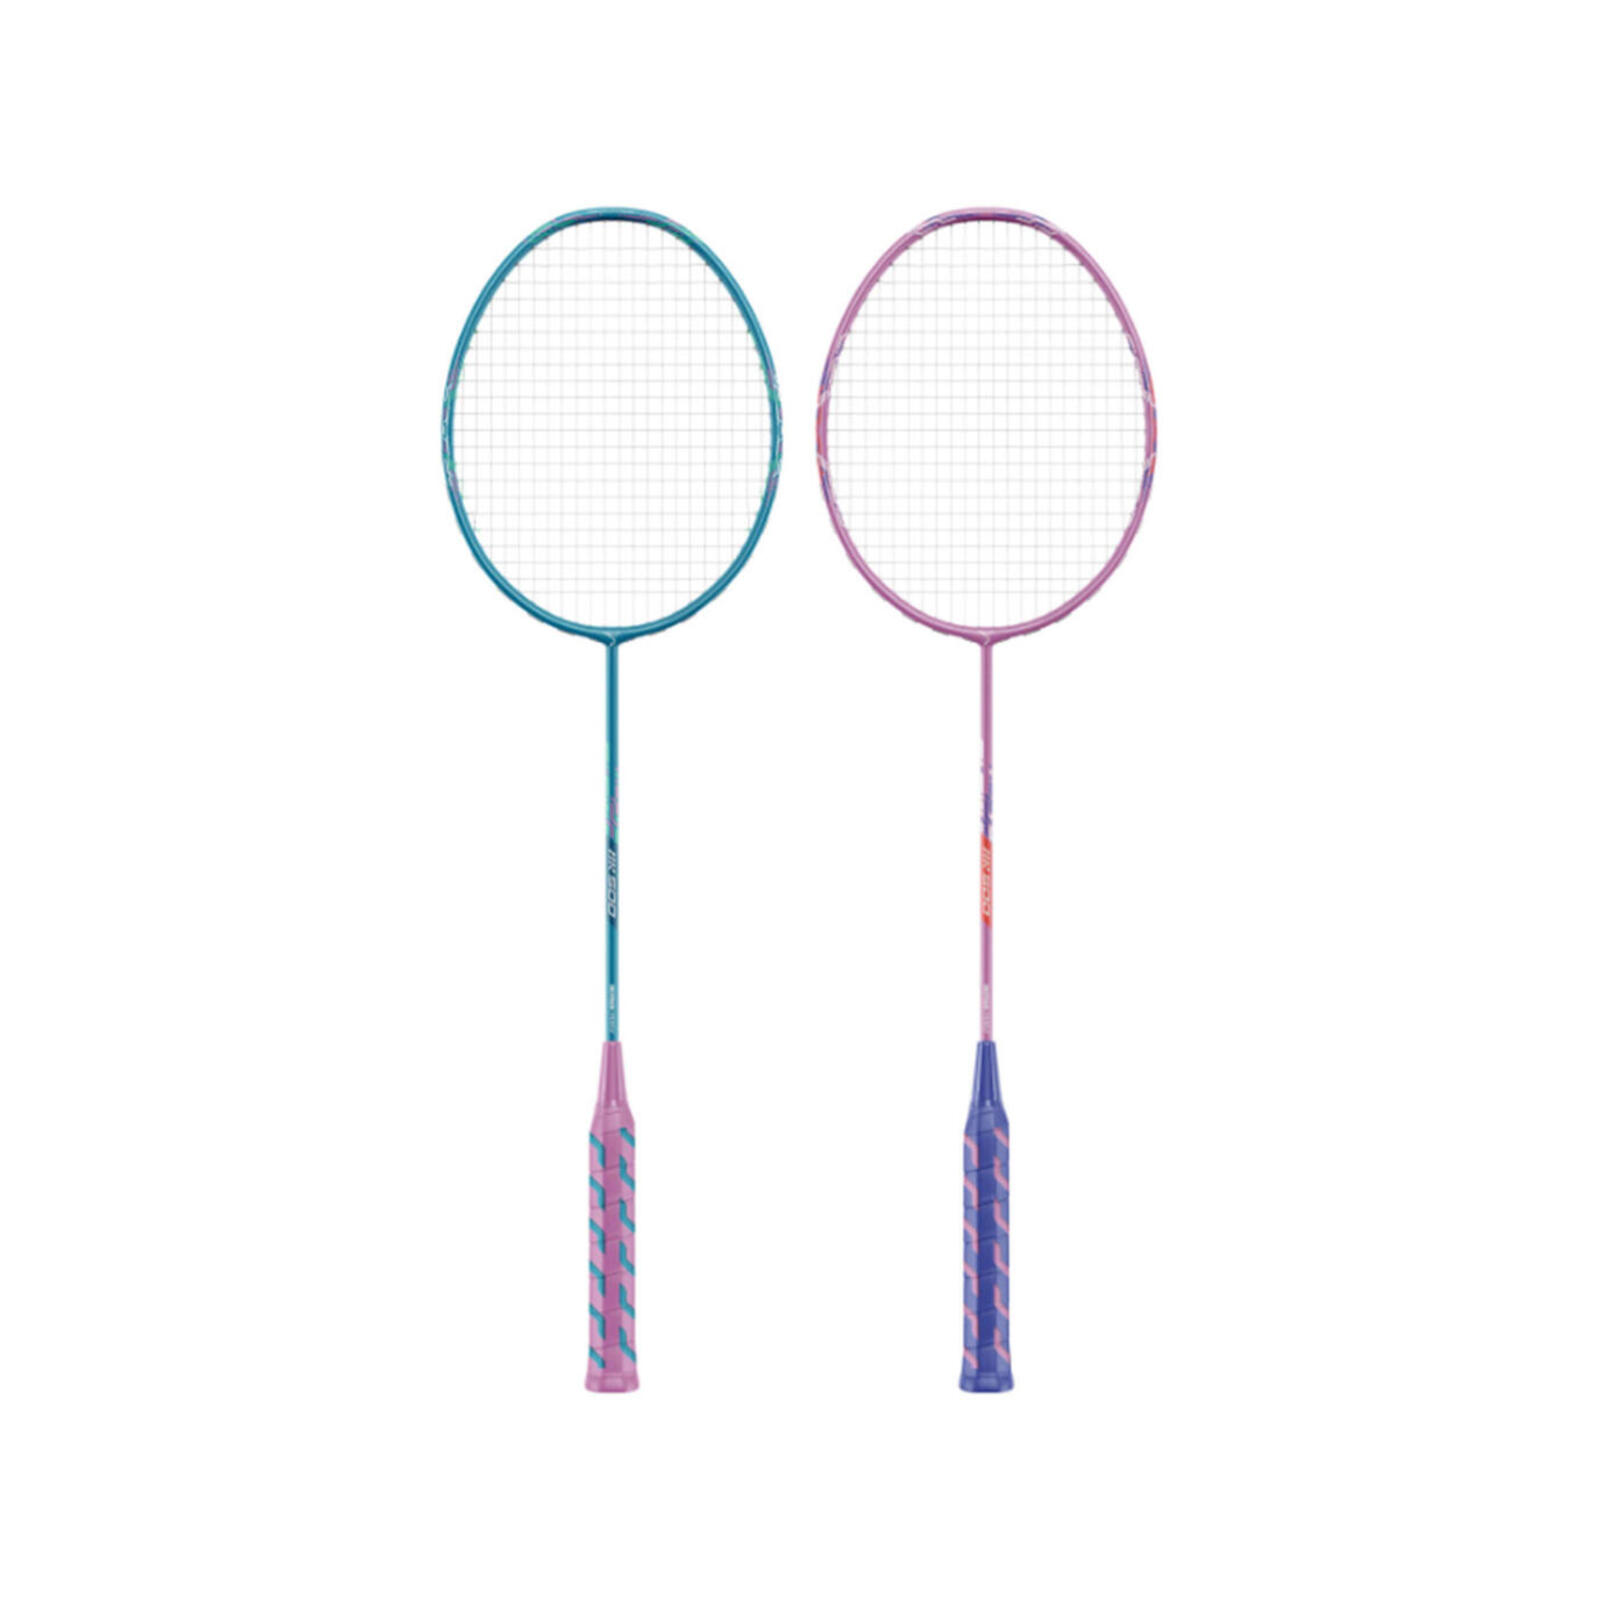 Bor 500 Outdoor Badminton Racket Set Blue Indigo